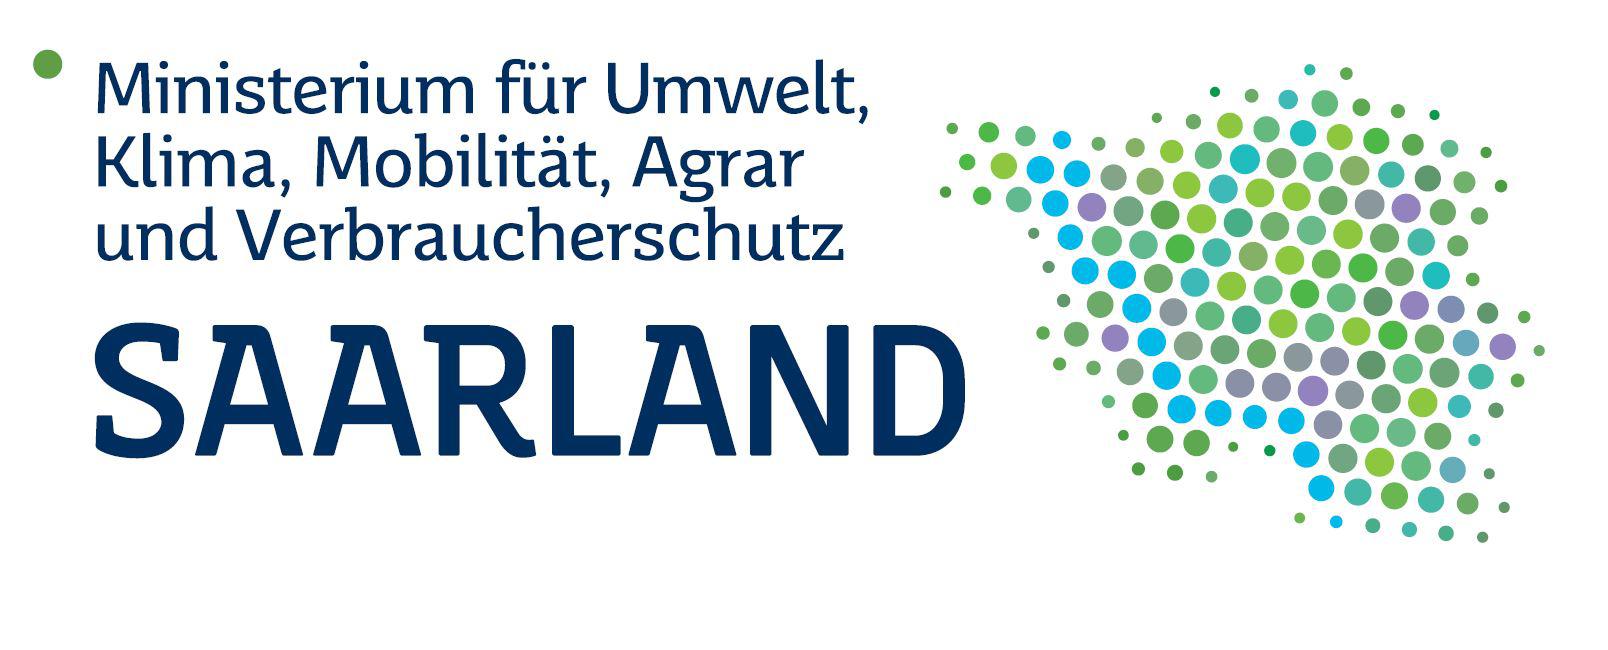 Logo ministerium umwelt Saarland